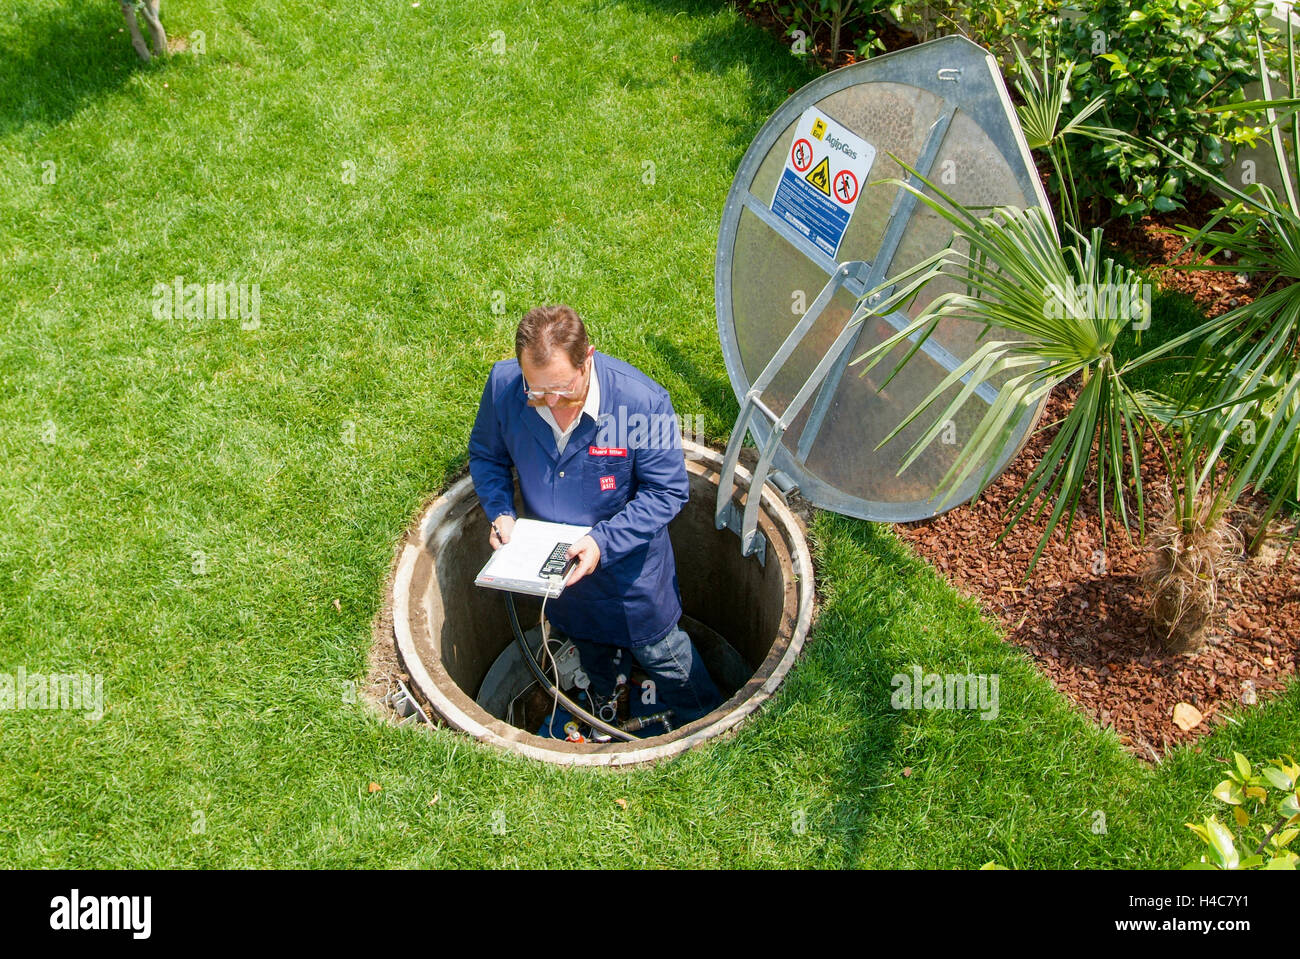 Lugano, Suisse - 3 juin 2005 : Technicien en facilitant la maintenance à un réservoir de gaz sur le jardin d'une maison Banque D'Images